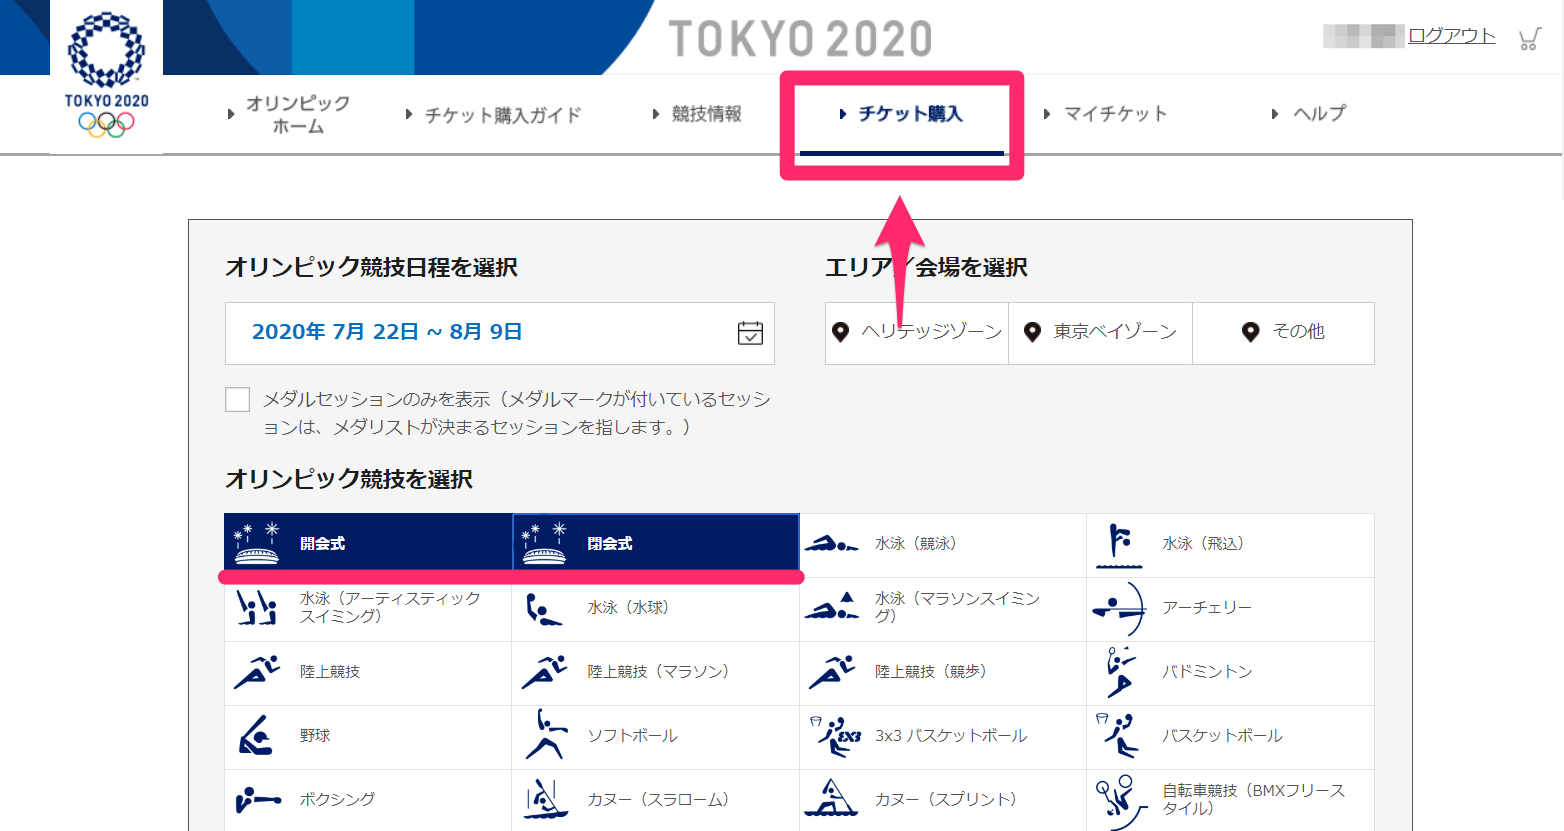 【東京オリンピック】観戦チケットの追加抽選販売がスタート！ 対象となる競技と申込方法